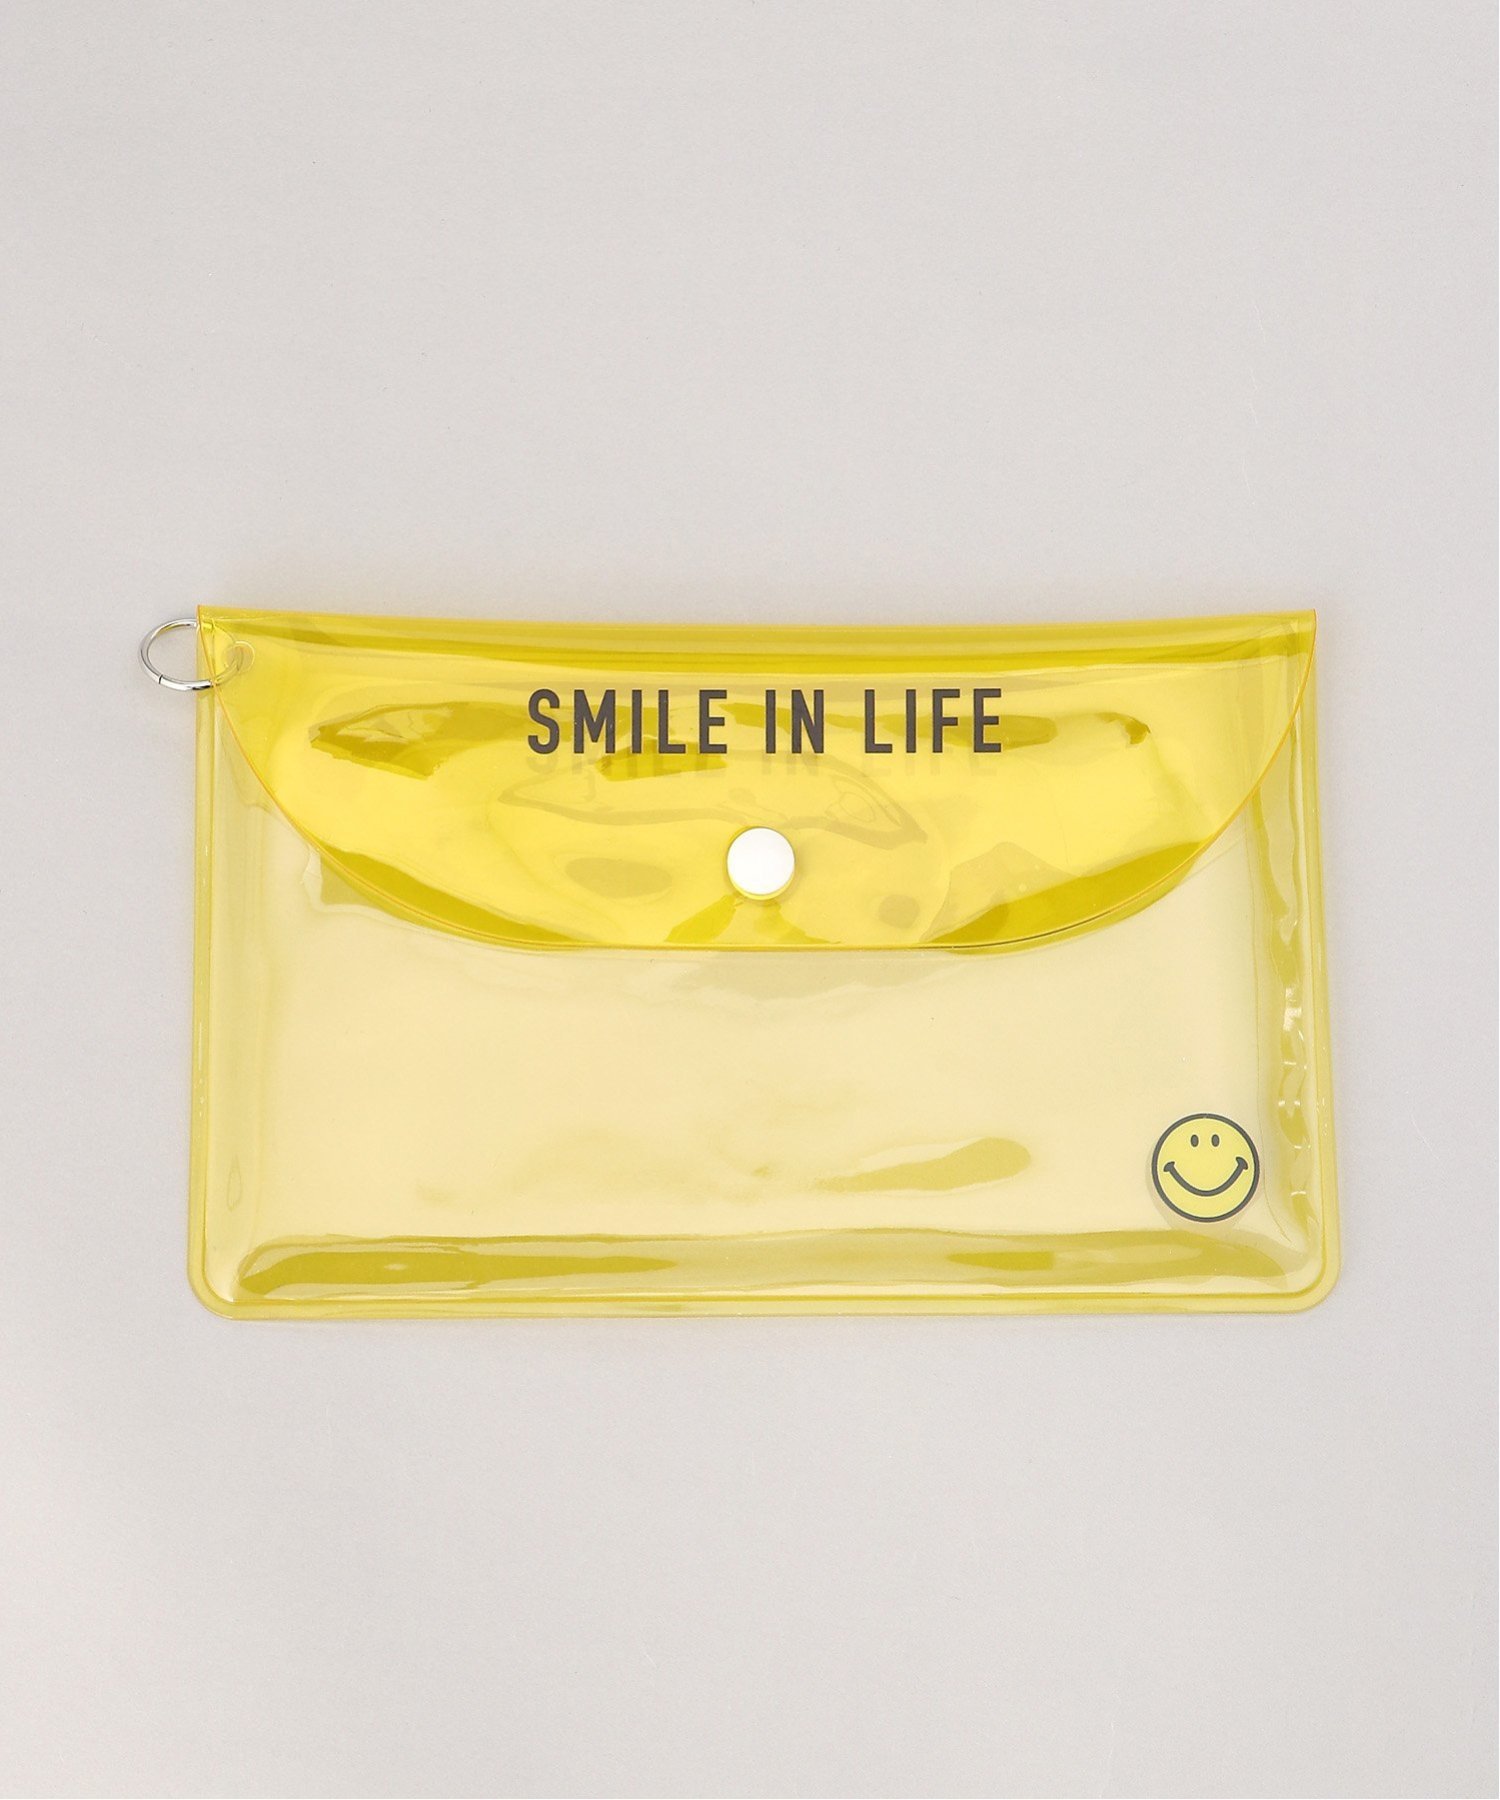 SMILEY FACE SMILE/(U)スマイル 小物入れ 化粧ポーチ PSM-30627 アヴェンチュラ ファッション雑貨 マスク イエロー ピンク ブルー